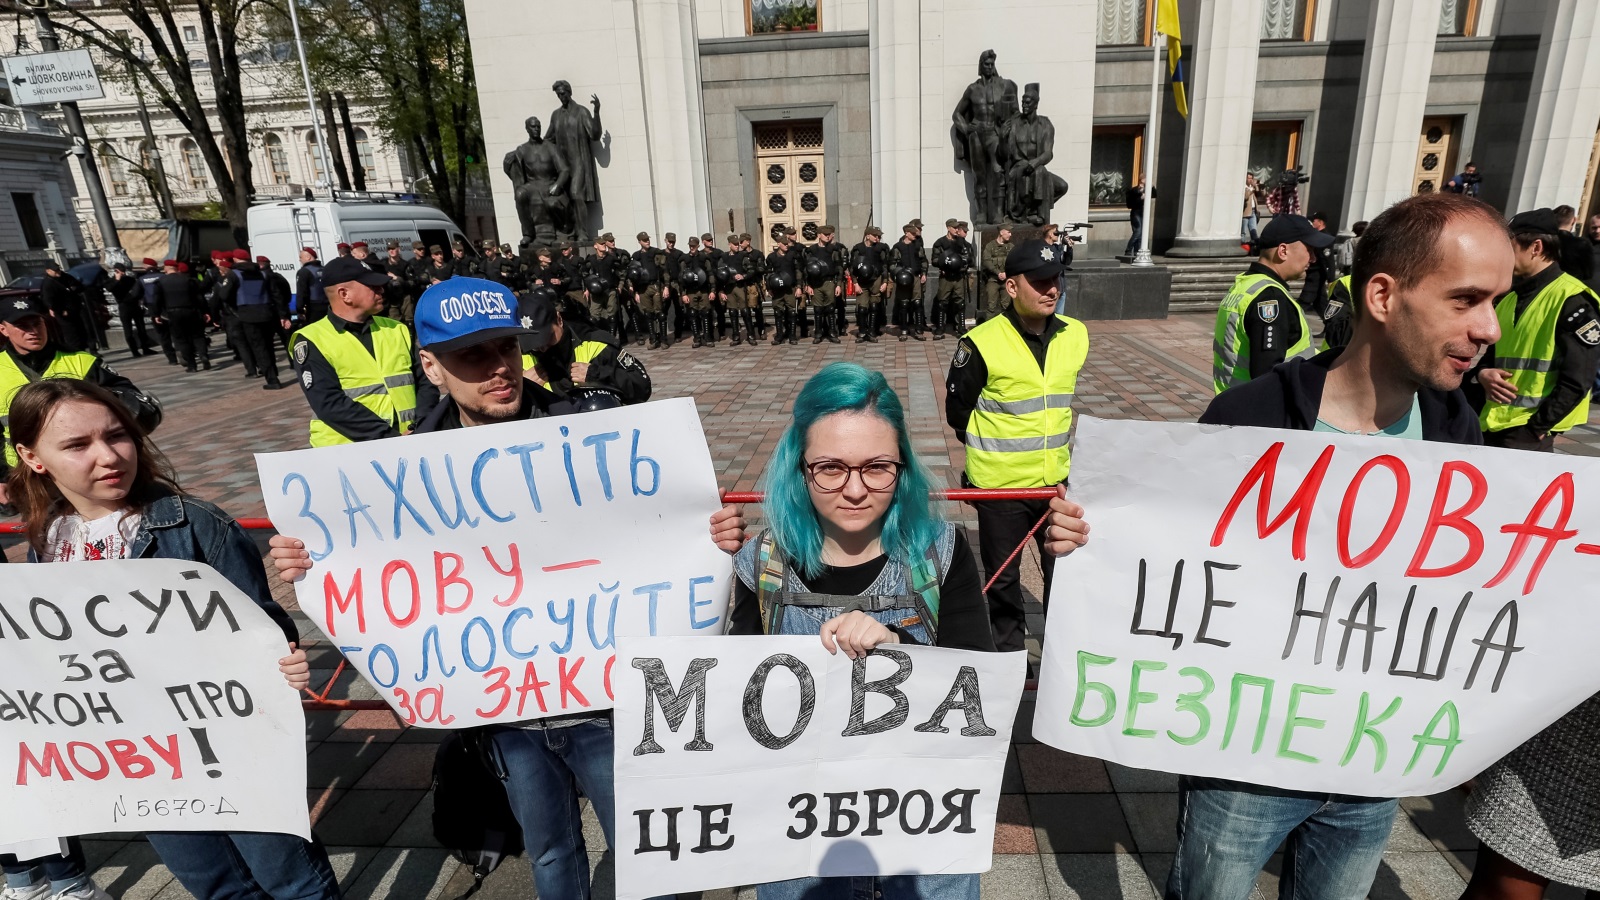 ‪ناشطون يطالبون البرلمانيين بقانون يجعل للغة الأوكرانية وضعا خاصا في البلاد‬ ناشطون يطالبون البرلمانيين بقانون يجعل للغة الأوكرانية وضعا خاصا في البلاد (رويترز)